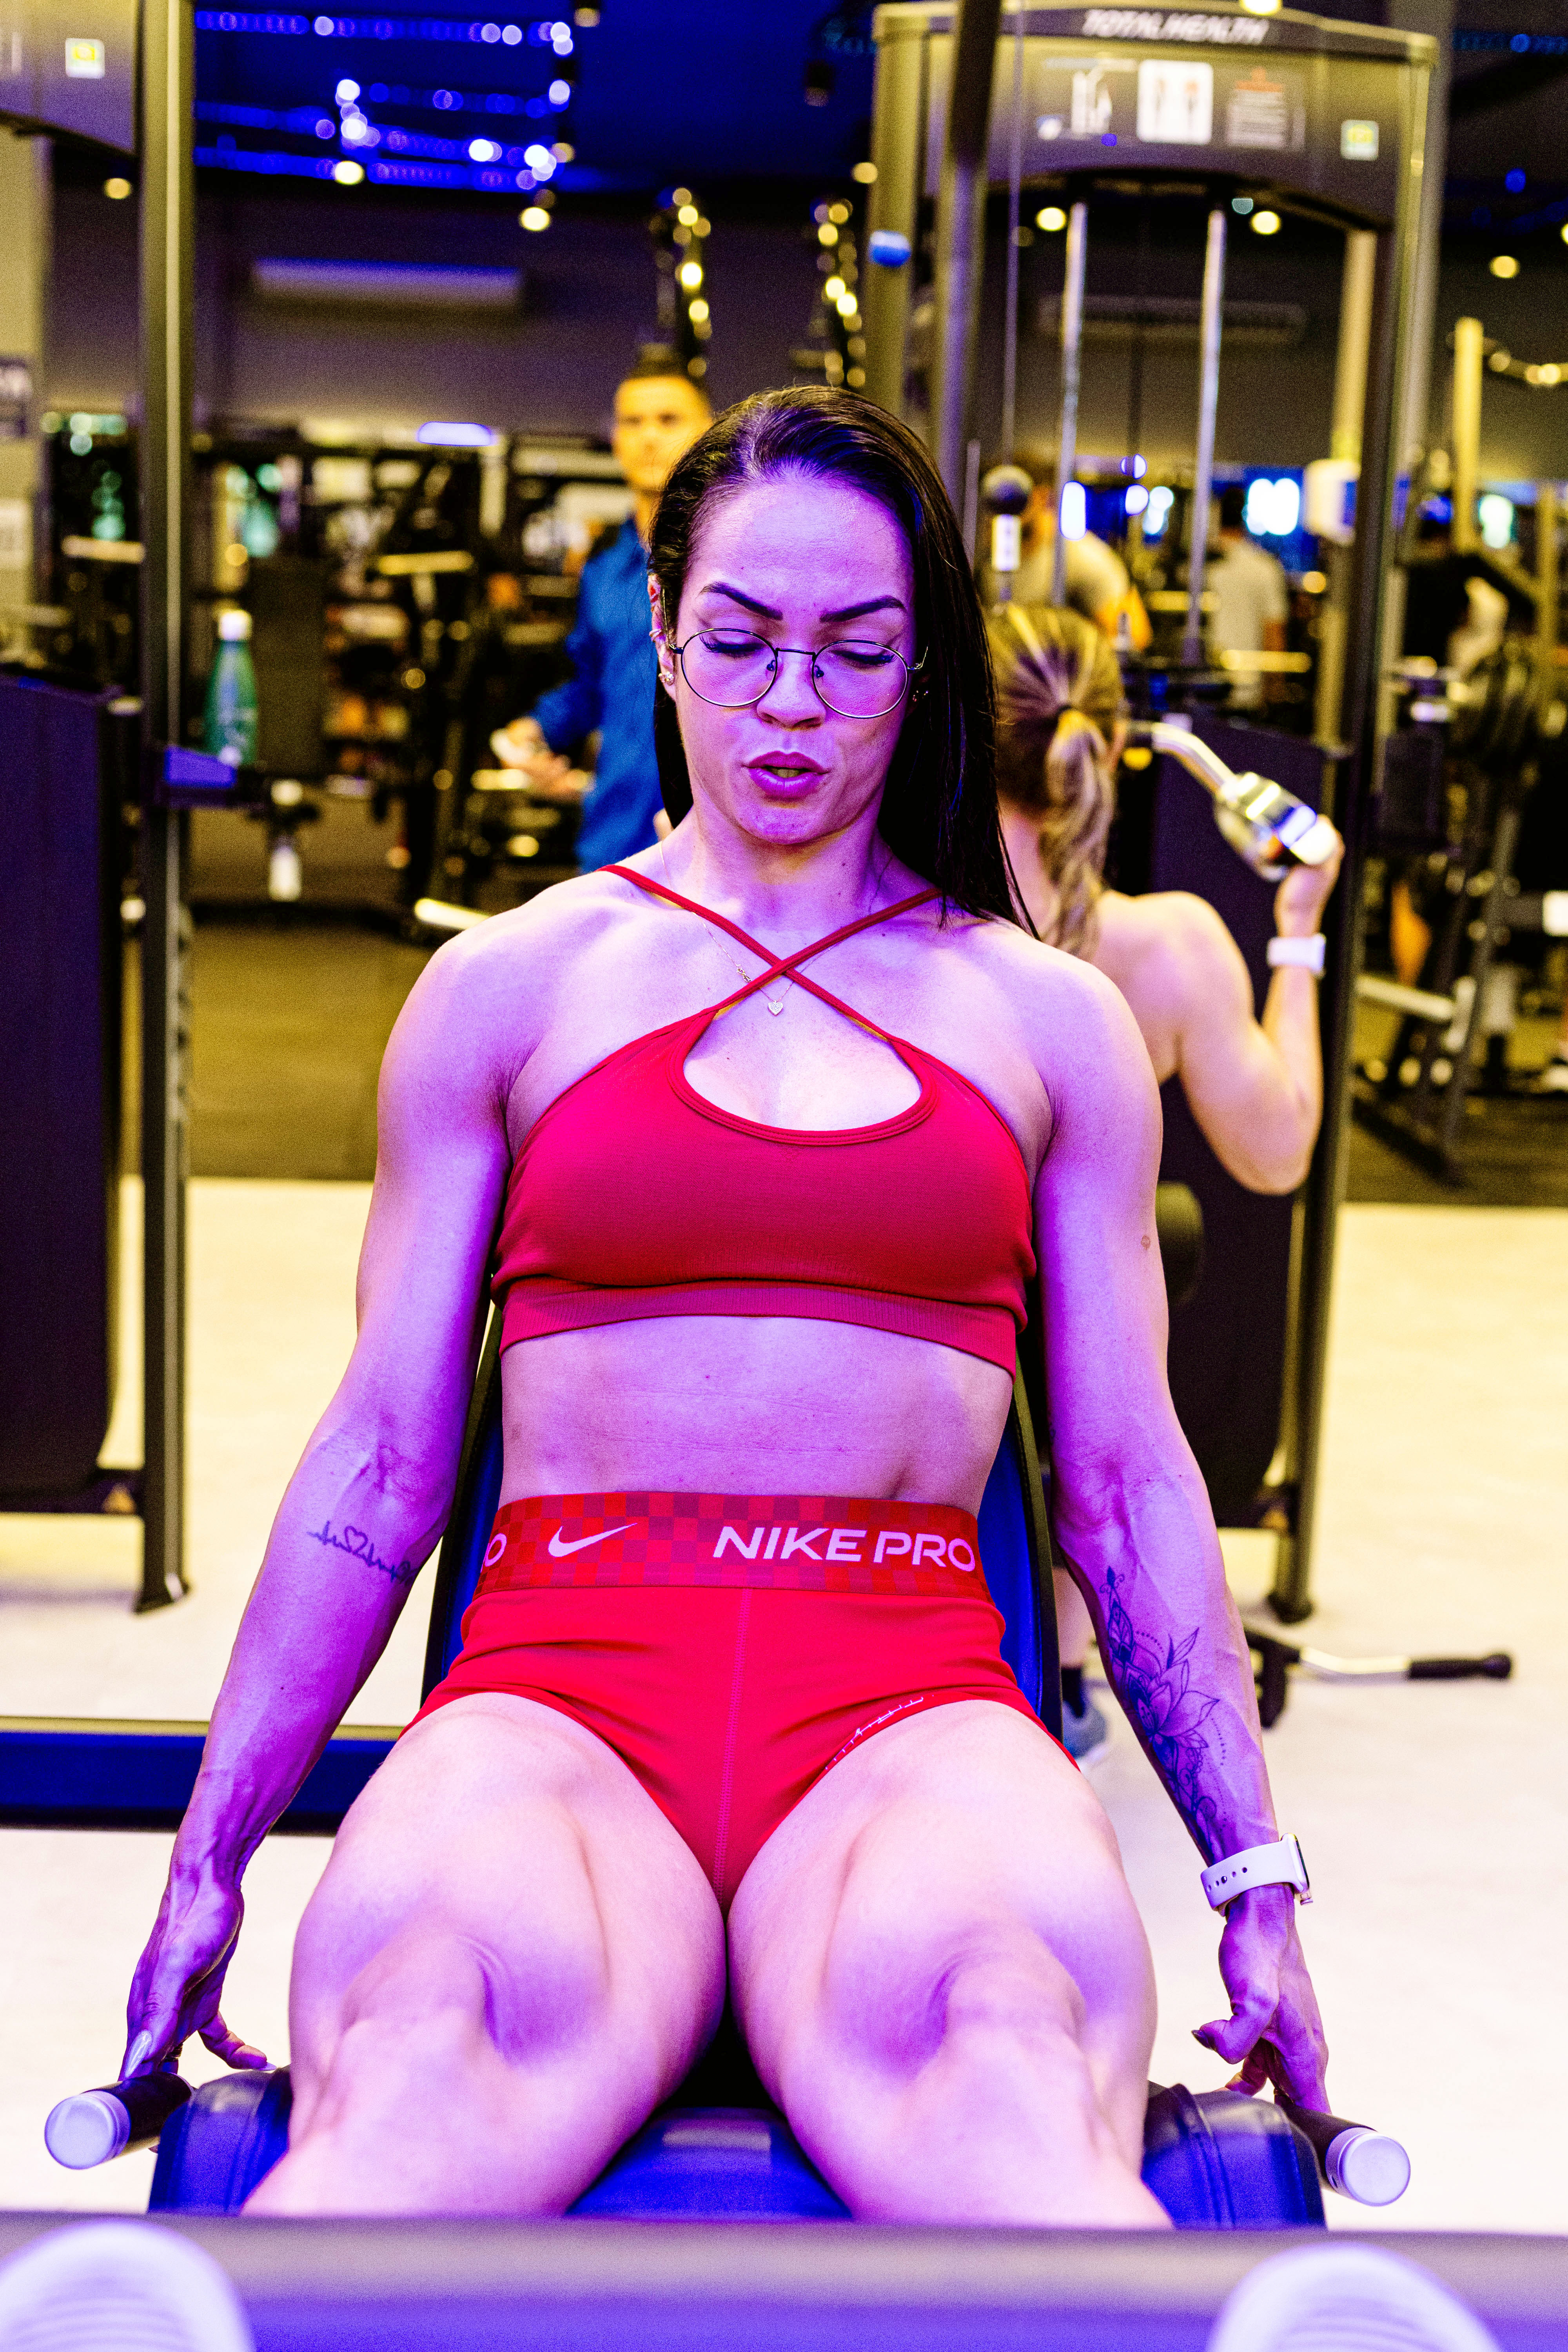 /Thaliny Alves durante exercício em academia no Farol: rotina de exercícios pesados